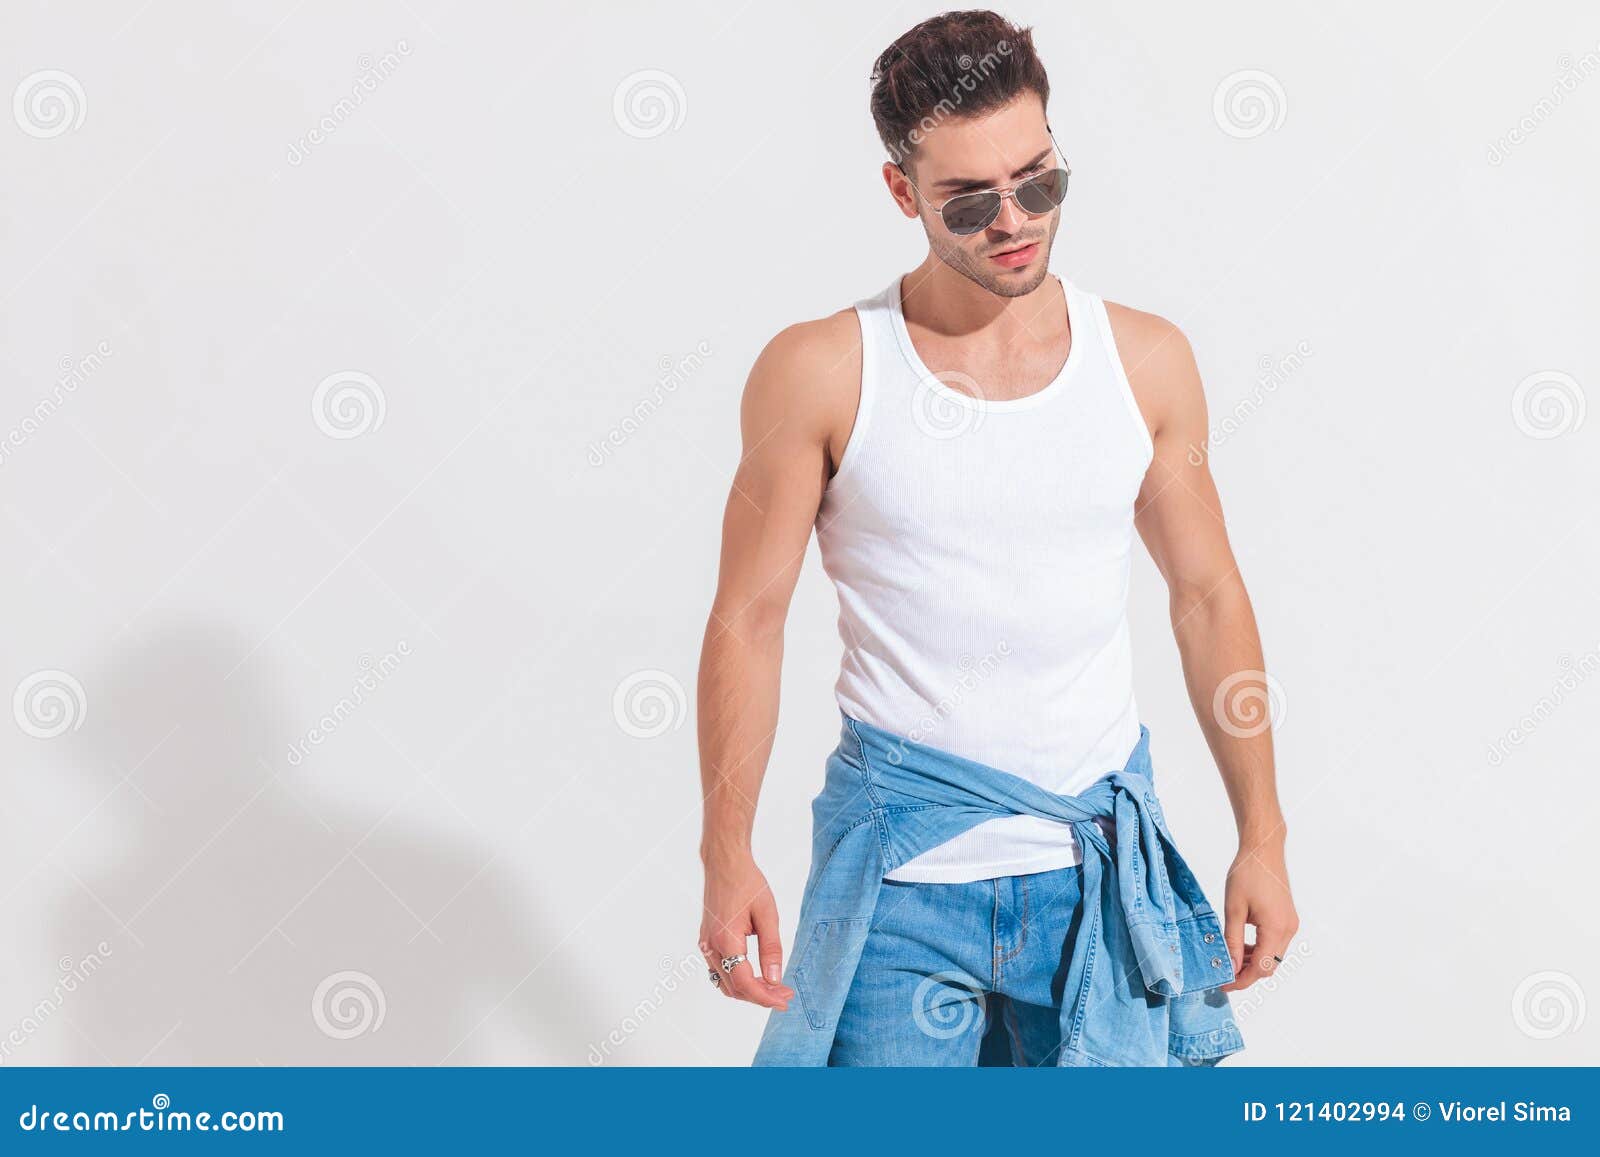 Men's Tank Top Vest Top Undershirt Sleeveless Shirt Wifebeater